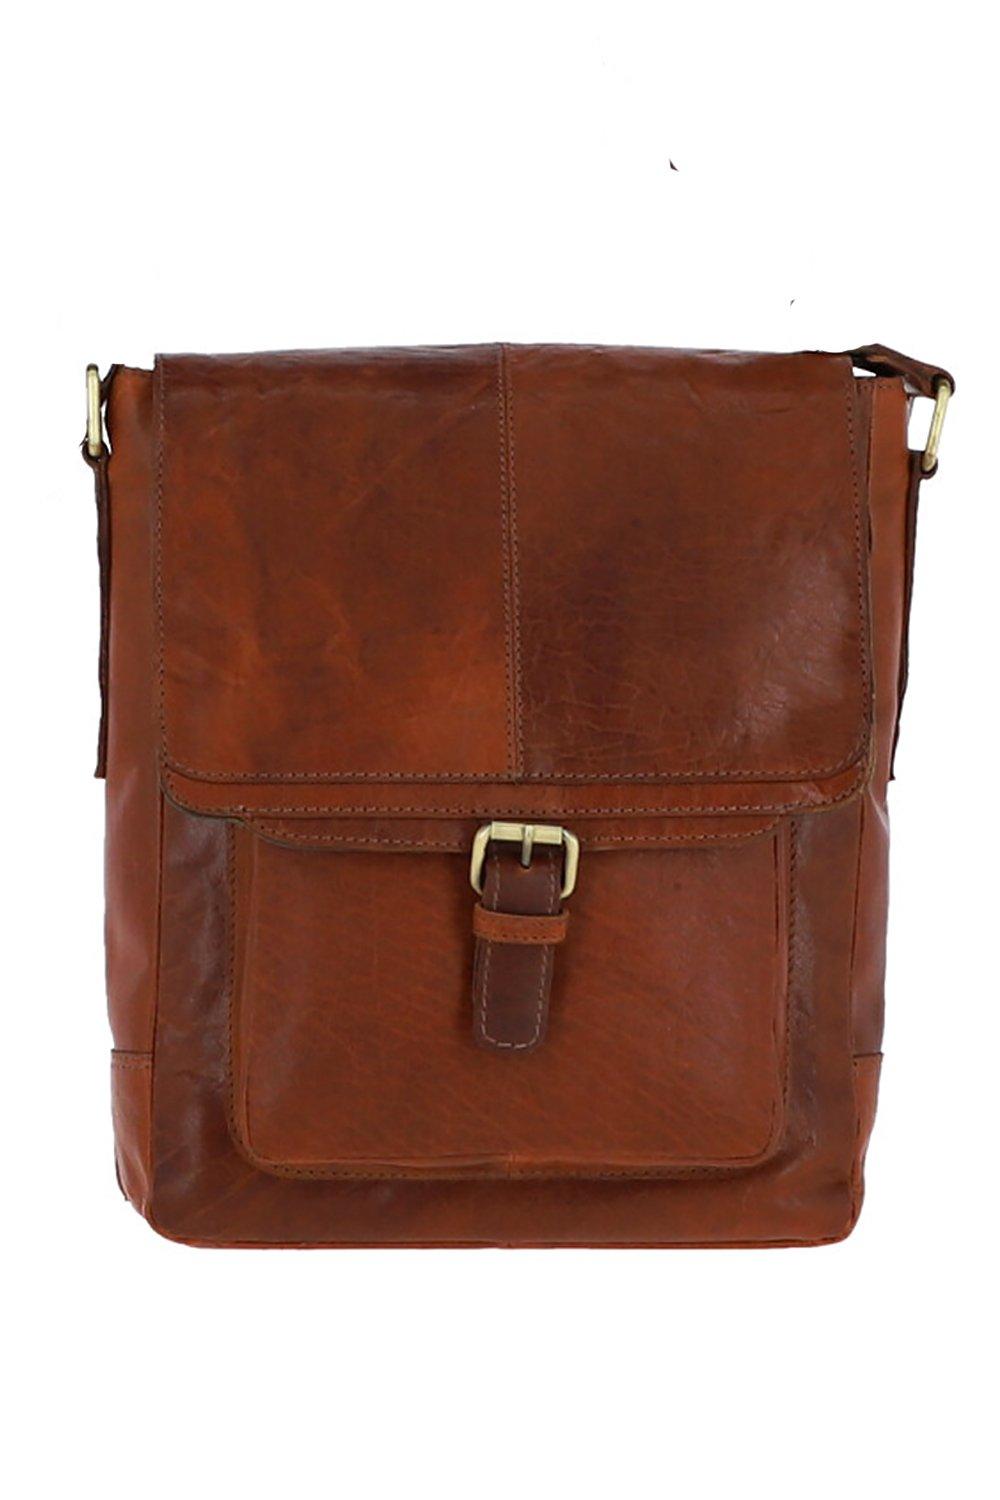 Дорожная сумка из винтажной кожи среднего размера Ashwood Leather, коричневый сумка планшет повседневная натуральная кожа вмещает а4 внутренний карман регулируемый ремень черный